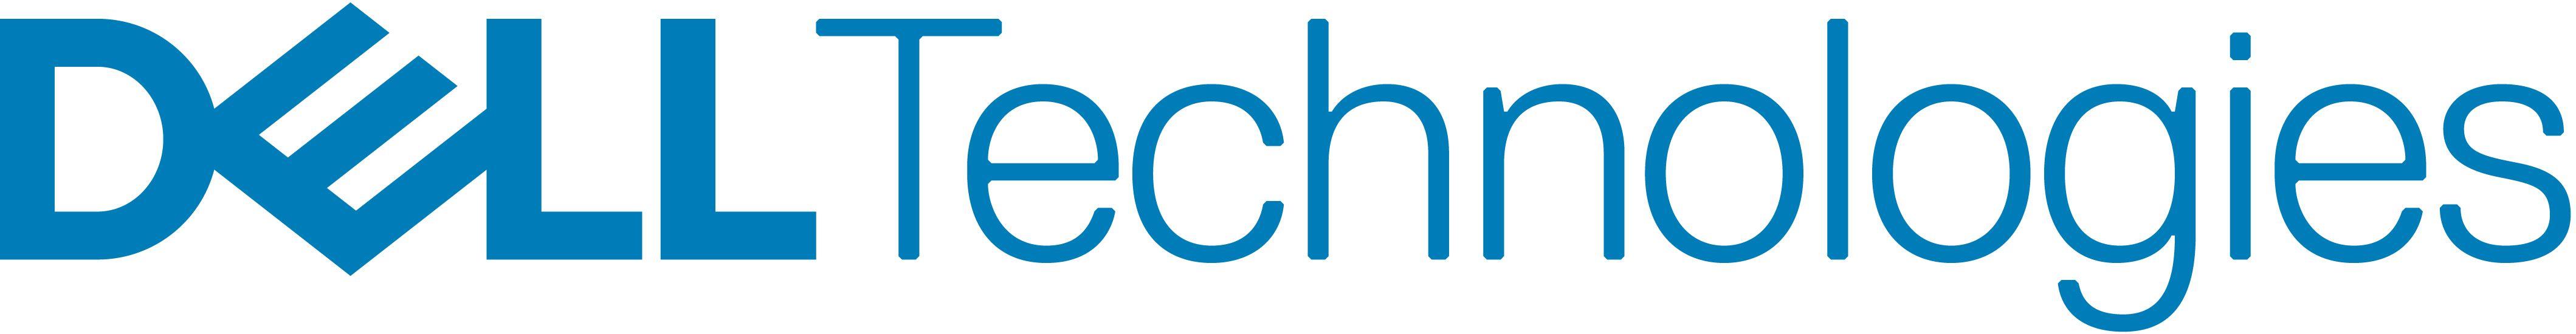 New Dell Logo - Dell technologies Logos